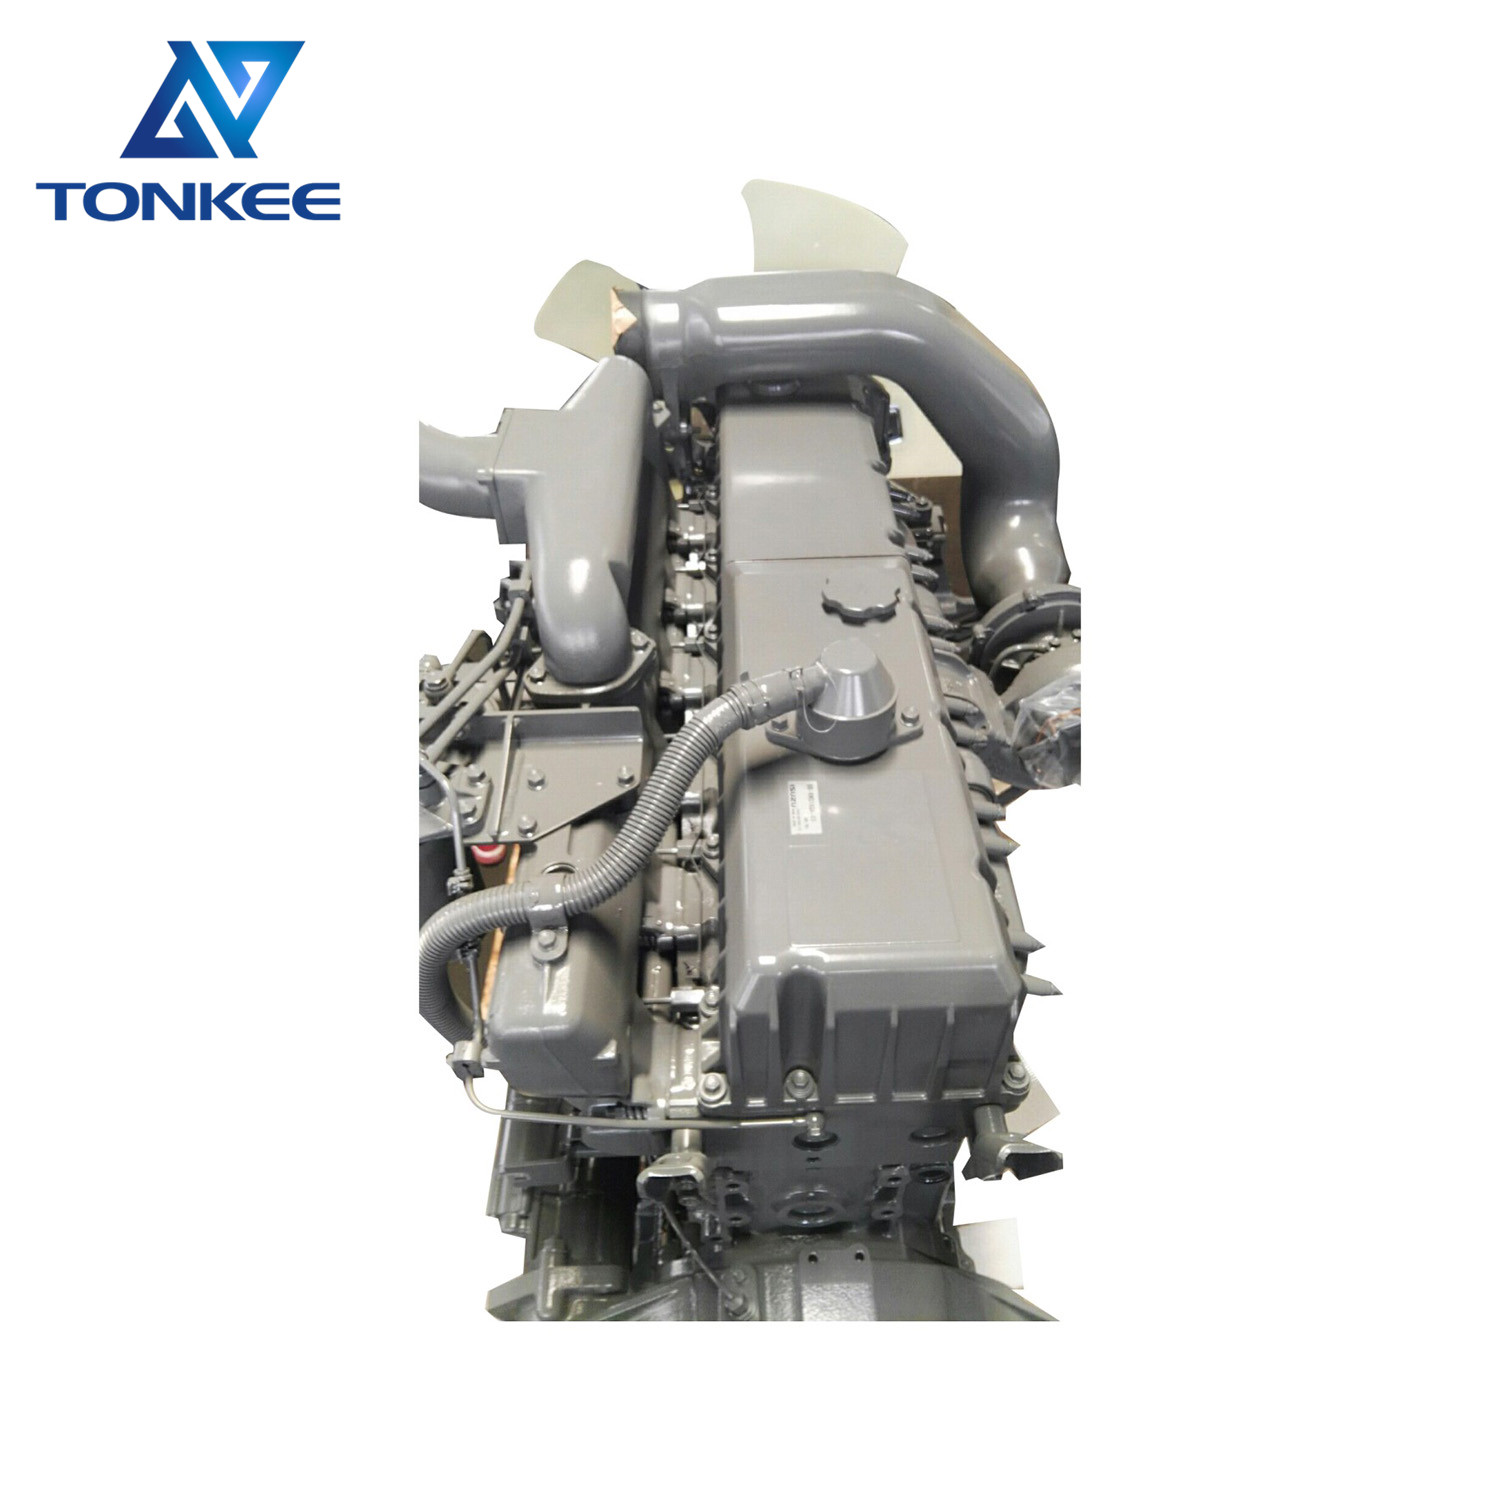 NEW ZX450 ZX650 excavator complete diesel engine assy AA-6WG1TQA 6WG1-TABEB-01-C2 6WG1 diesel engine assembly suitable for HITACHI ISUZU